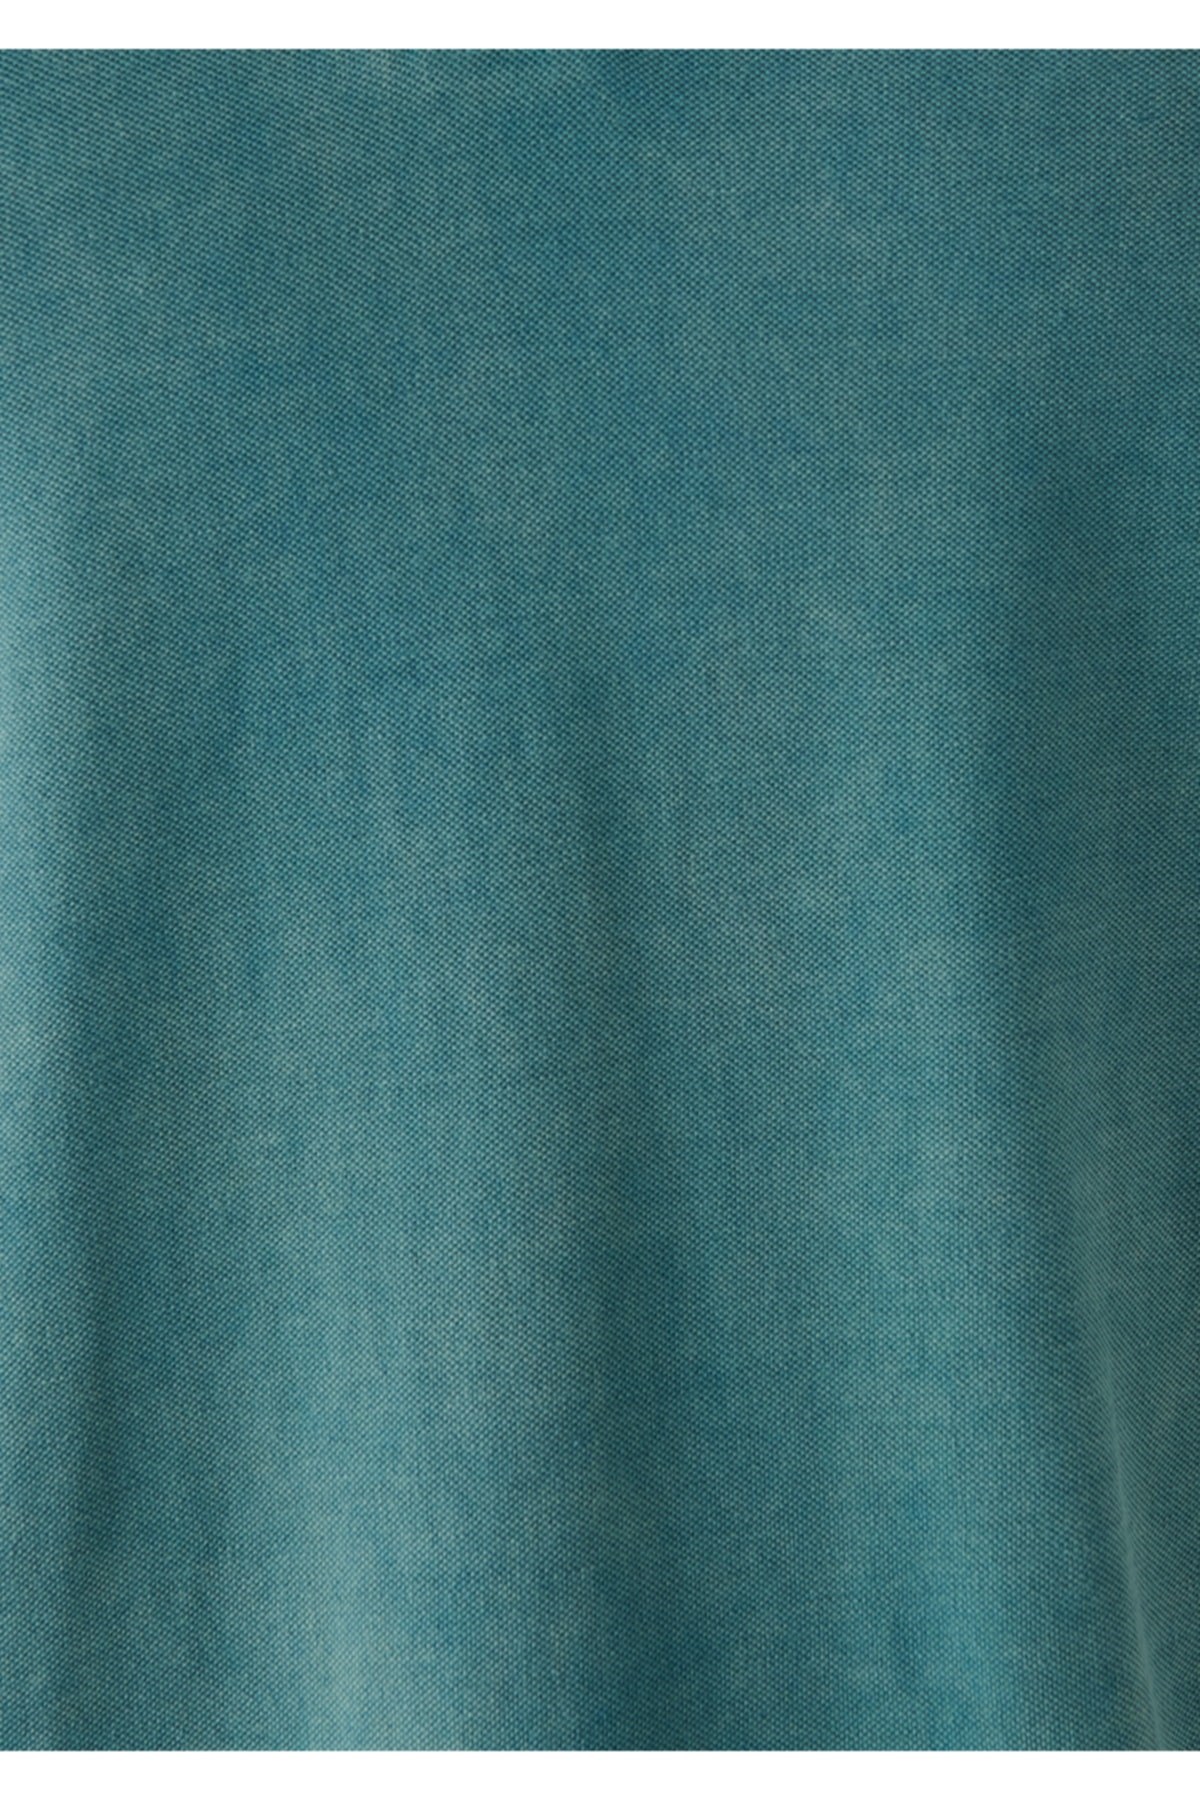 Mavi Jeans Erkek T-Shirt 065920-30708 